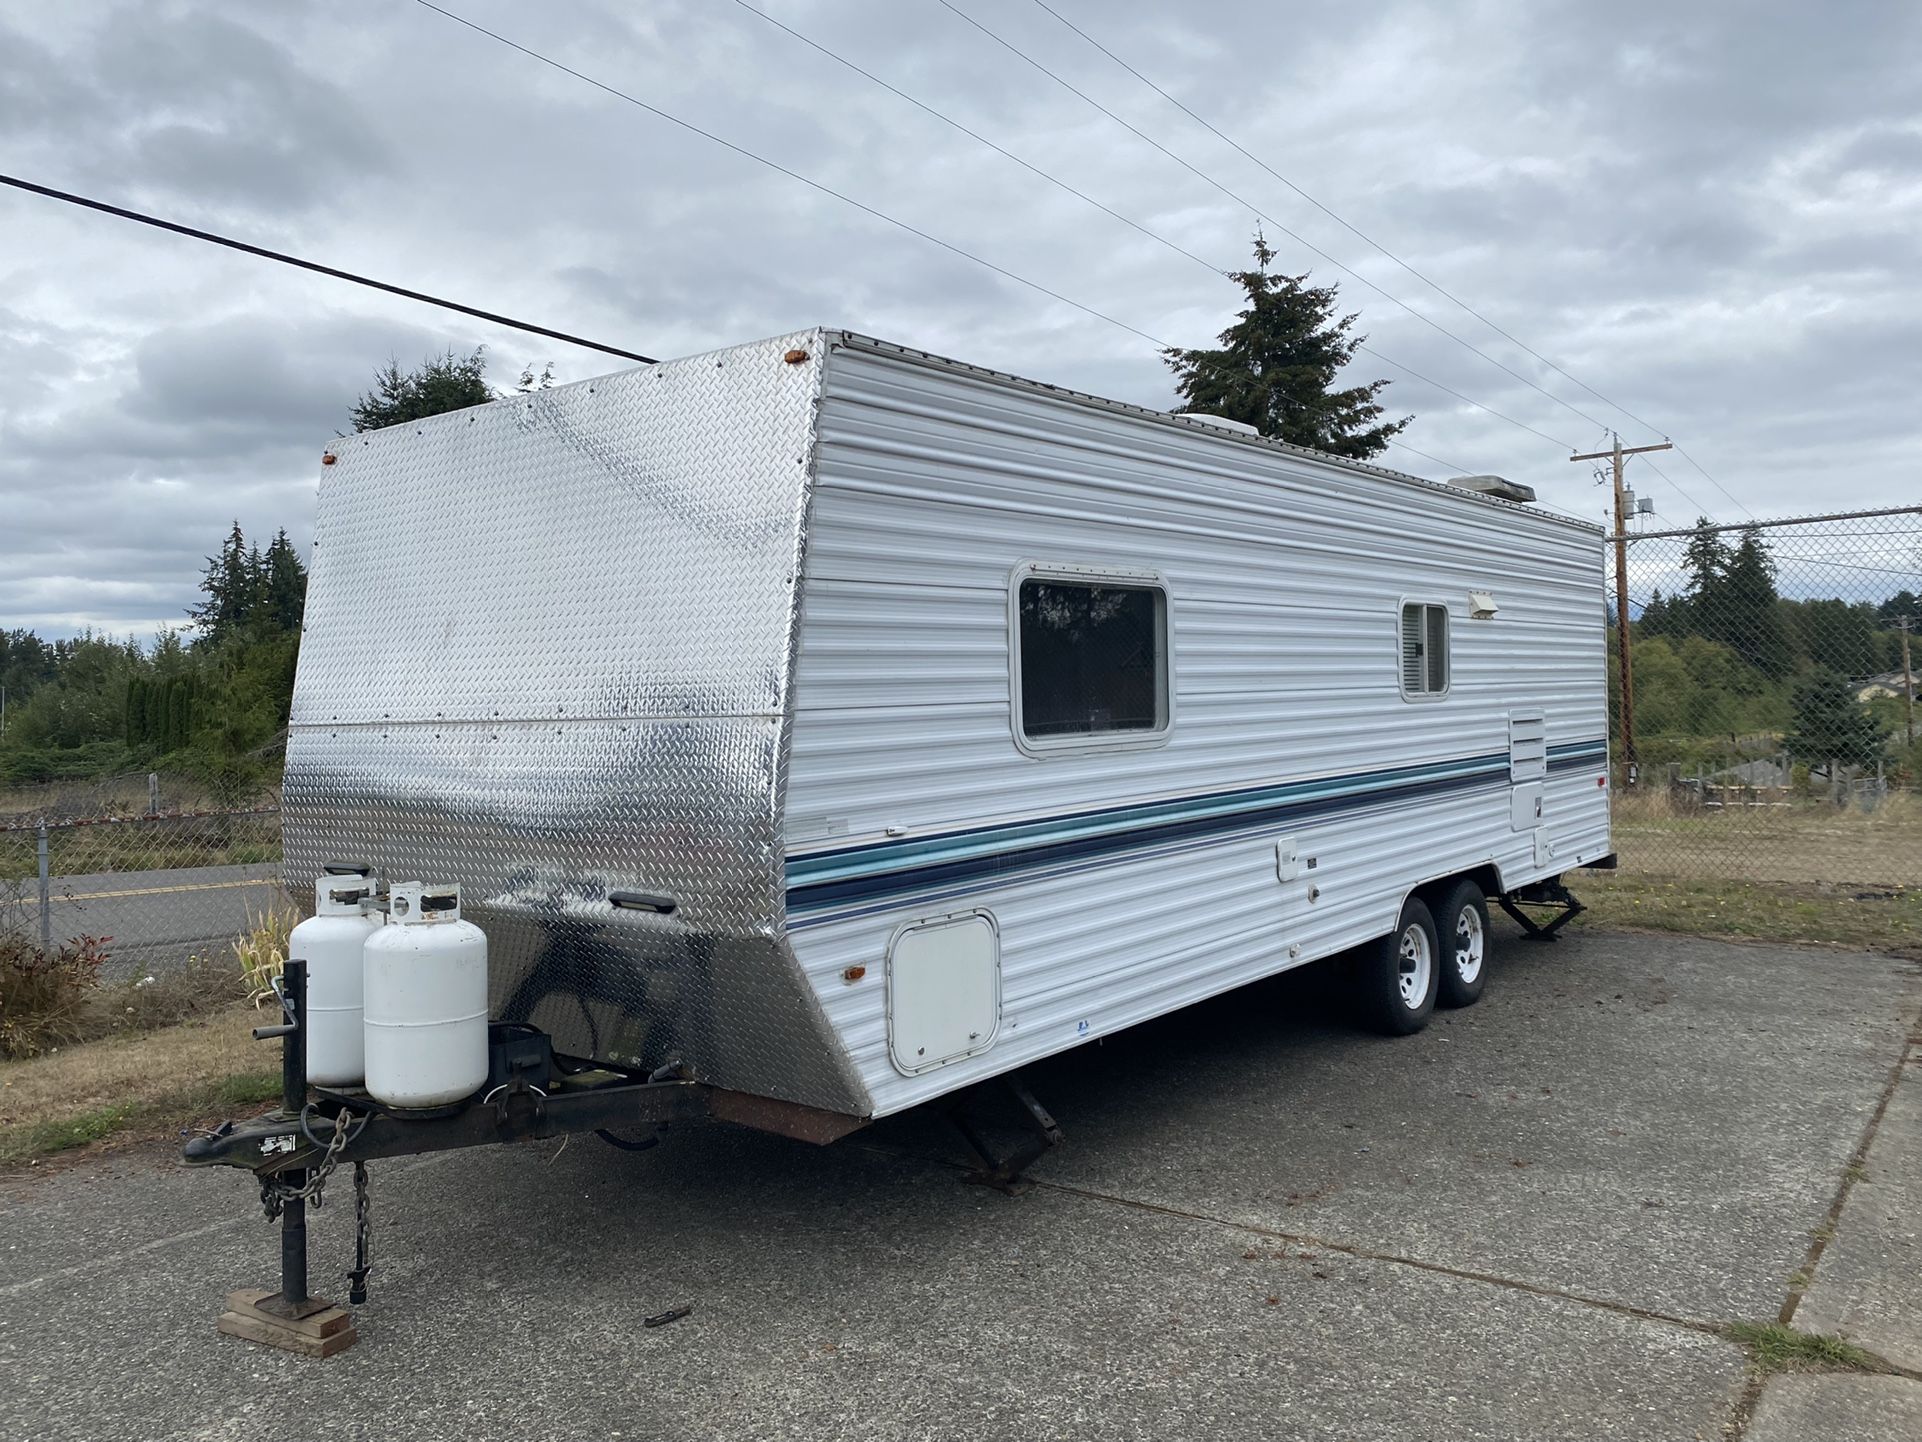 Skyline Nomad camper trailer